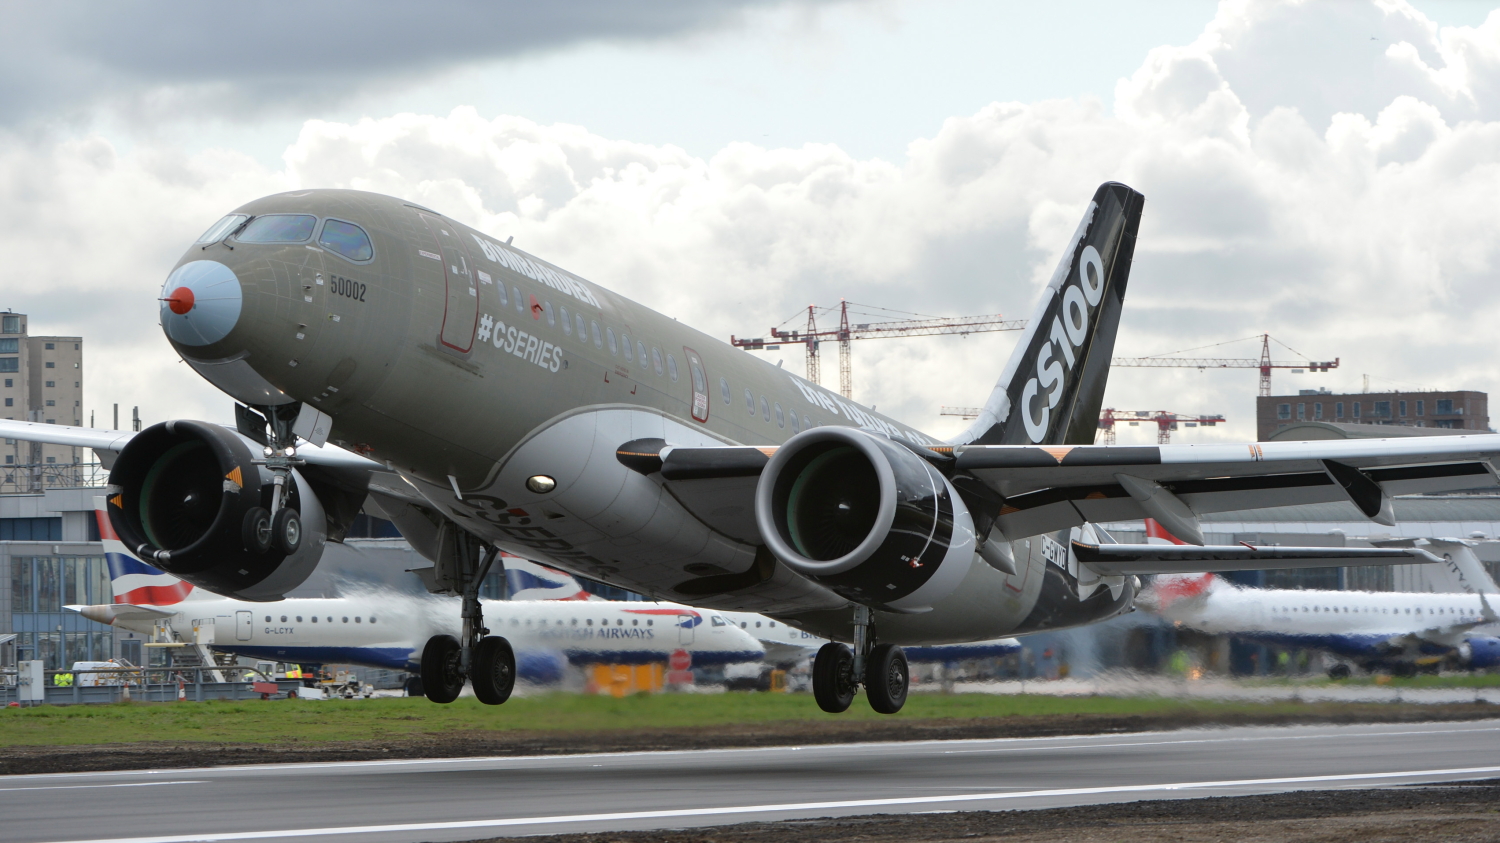 Bombardier CS100 aircraft performing validation tests at London City Airport